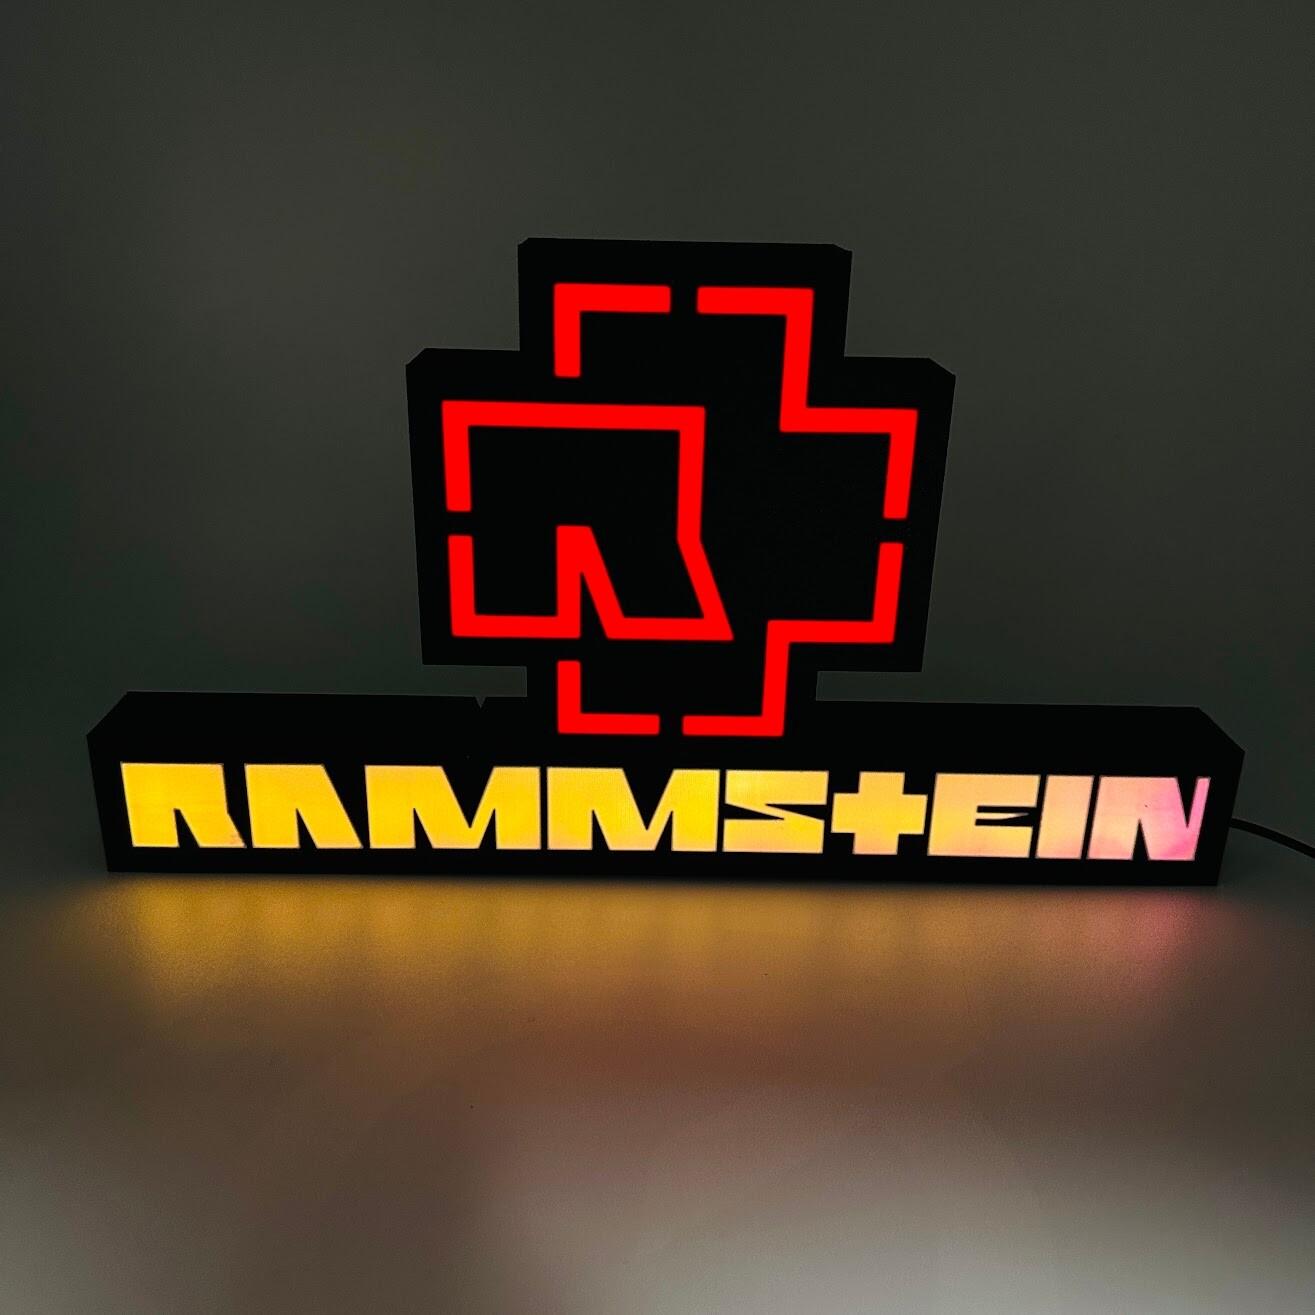 ArtStation - Rammstein lamp